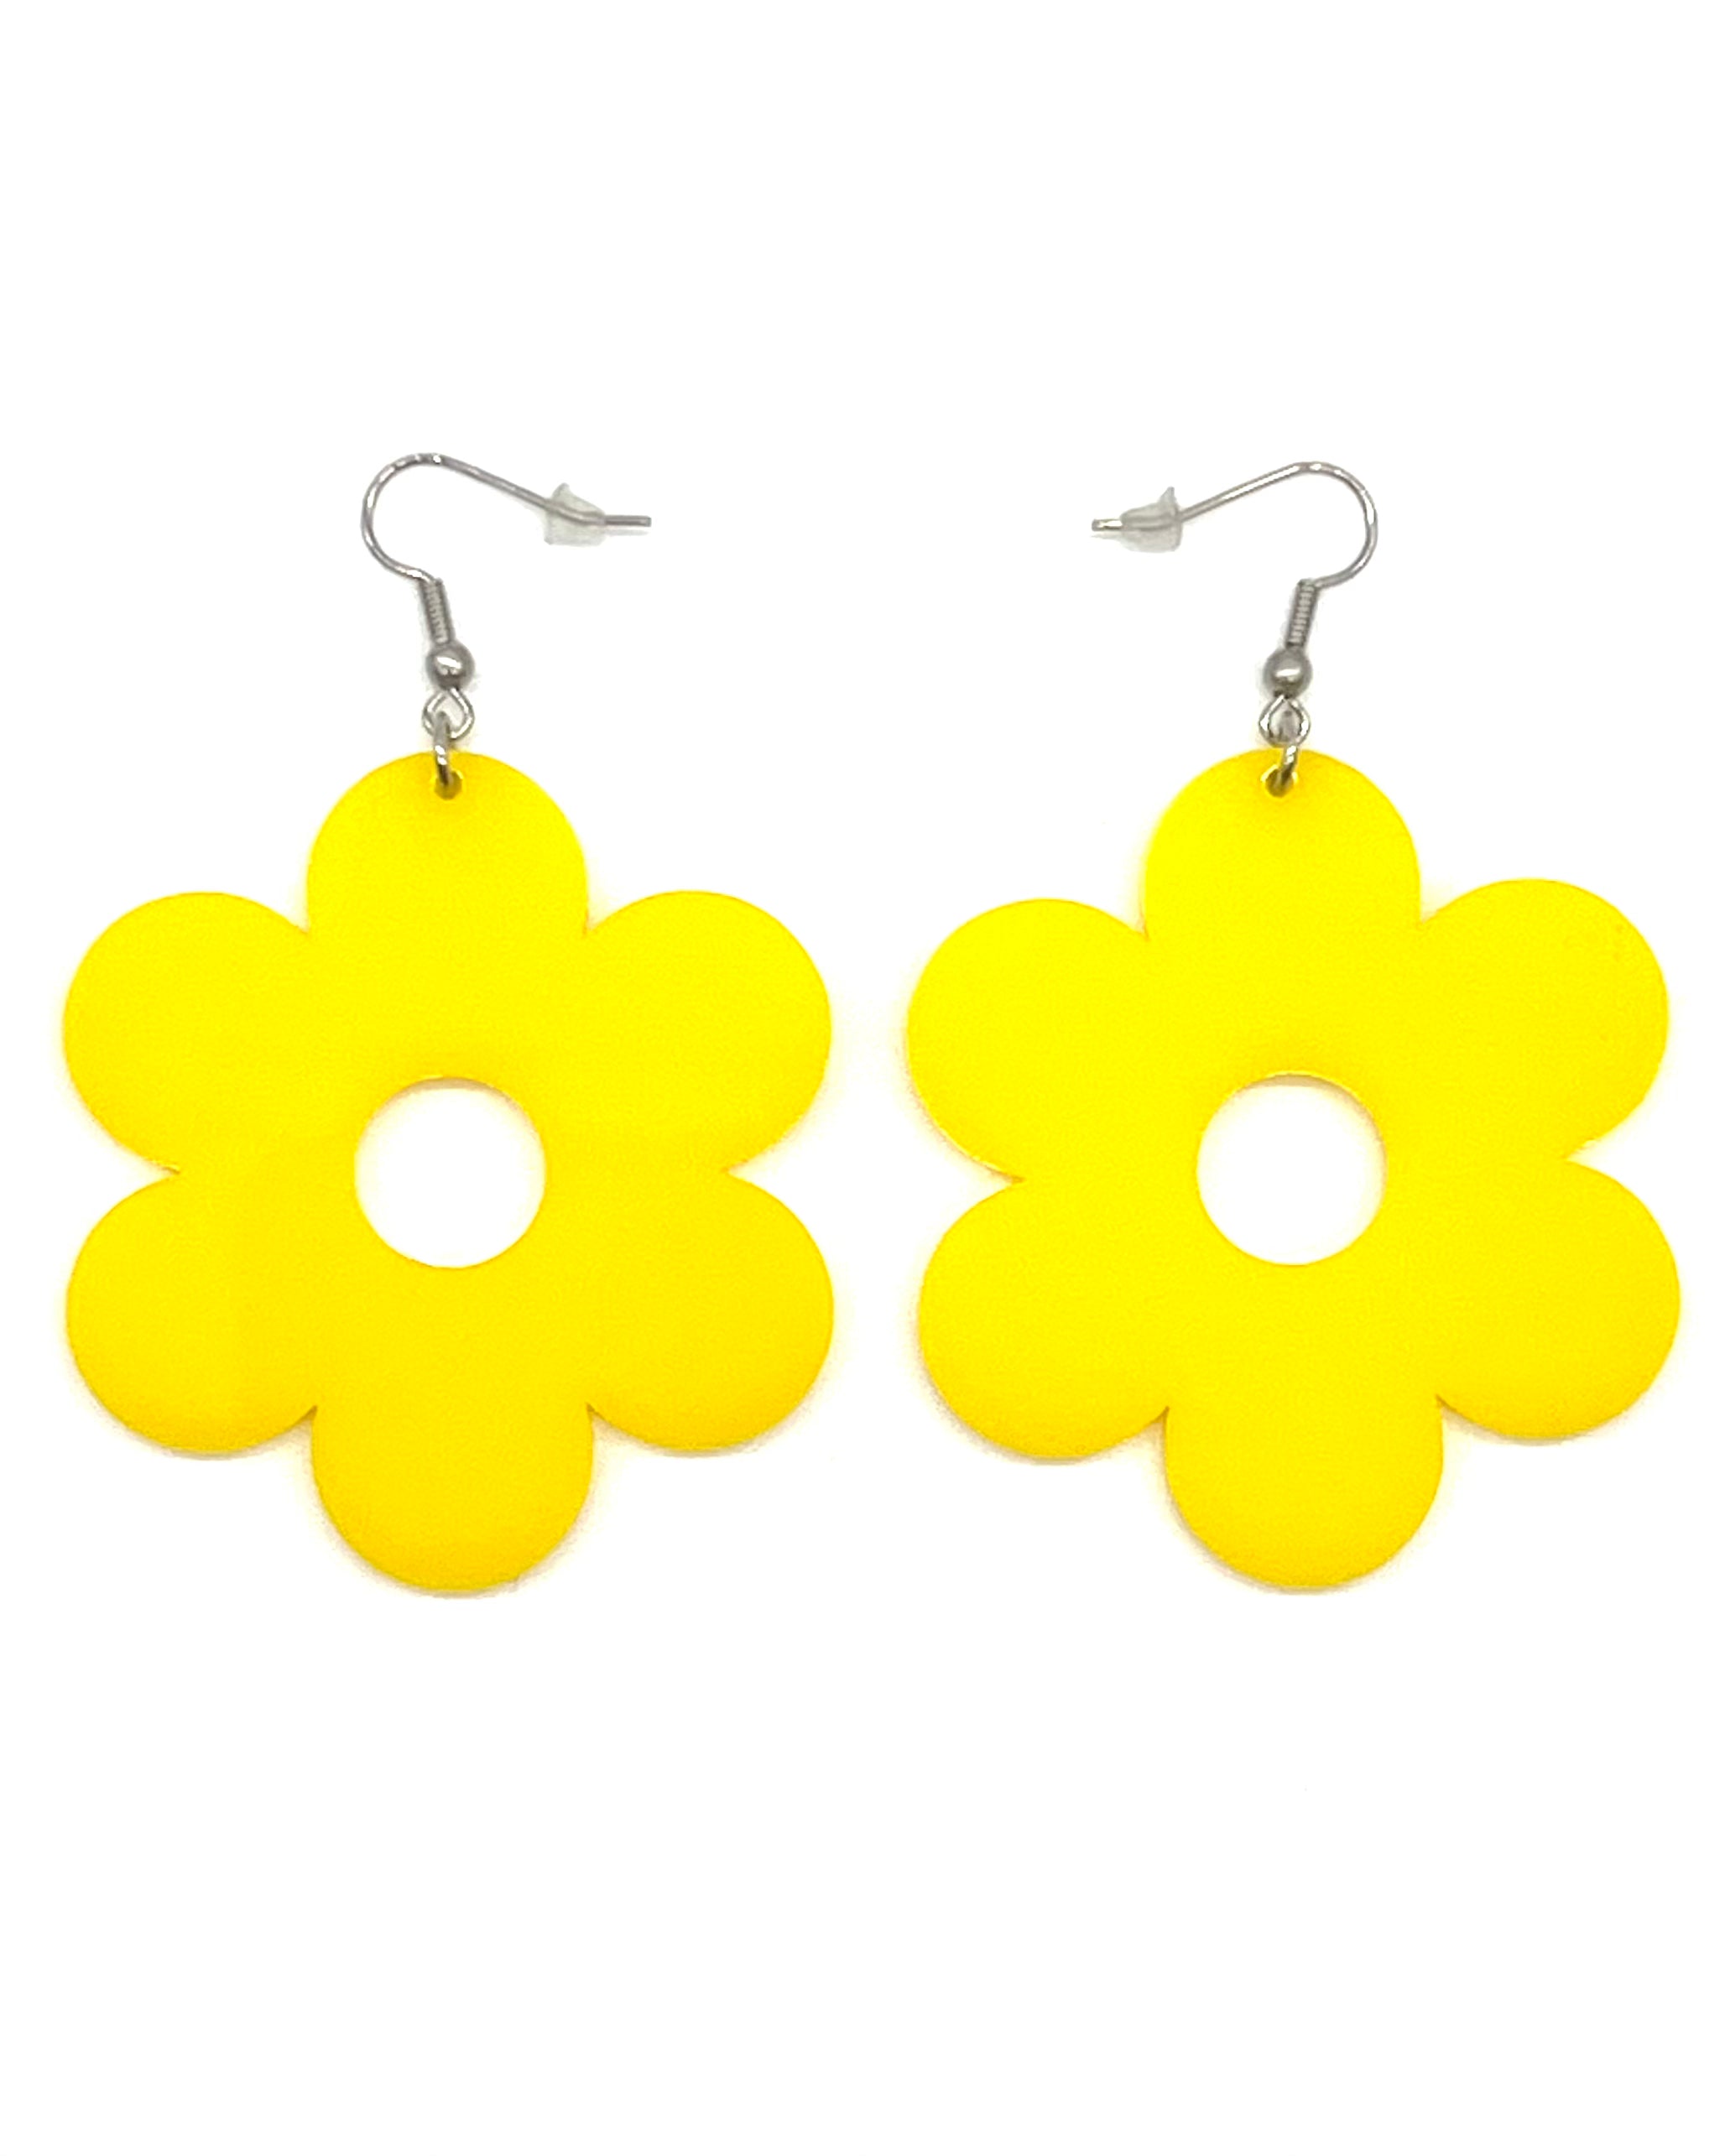 Acrylic Daisy Earrings in Yellow